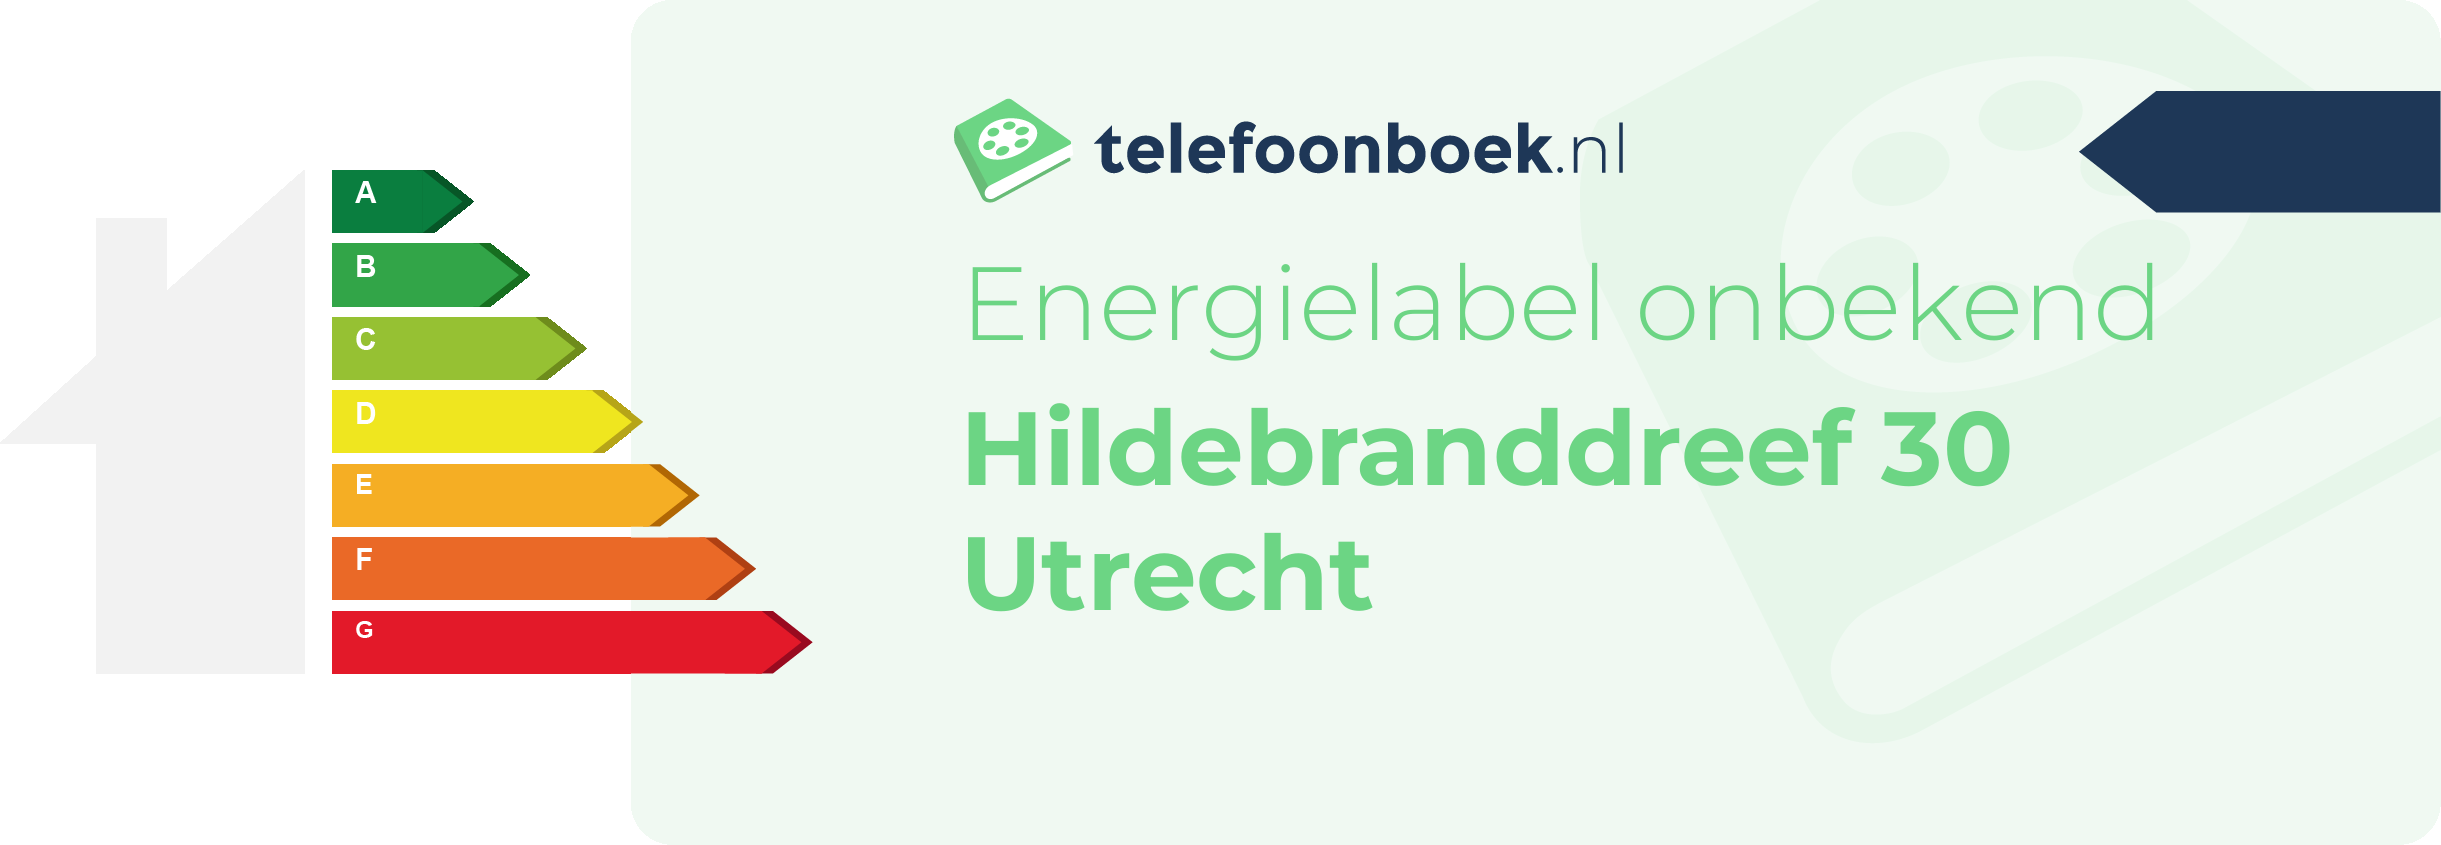 Energielabel Hildebranddreef 30 Utrecht